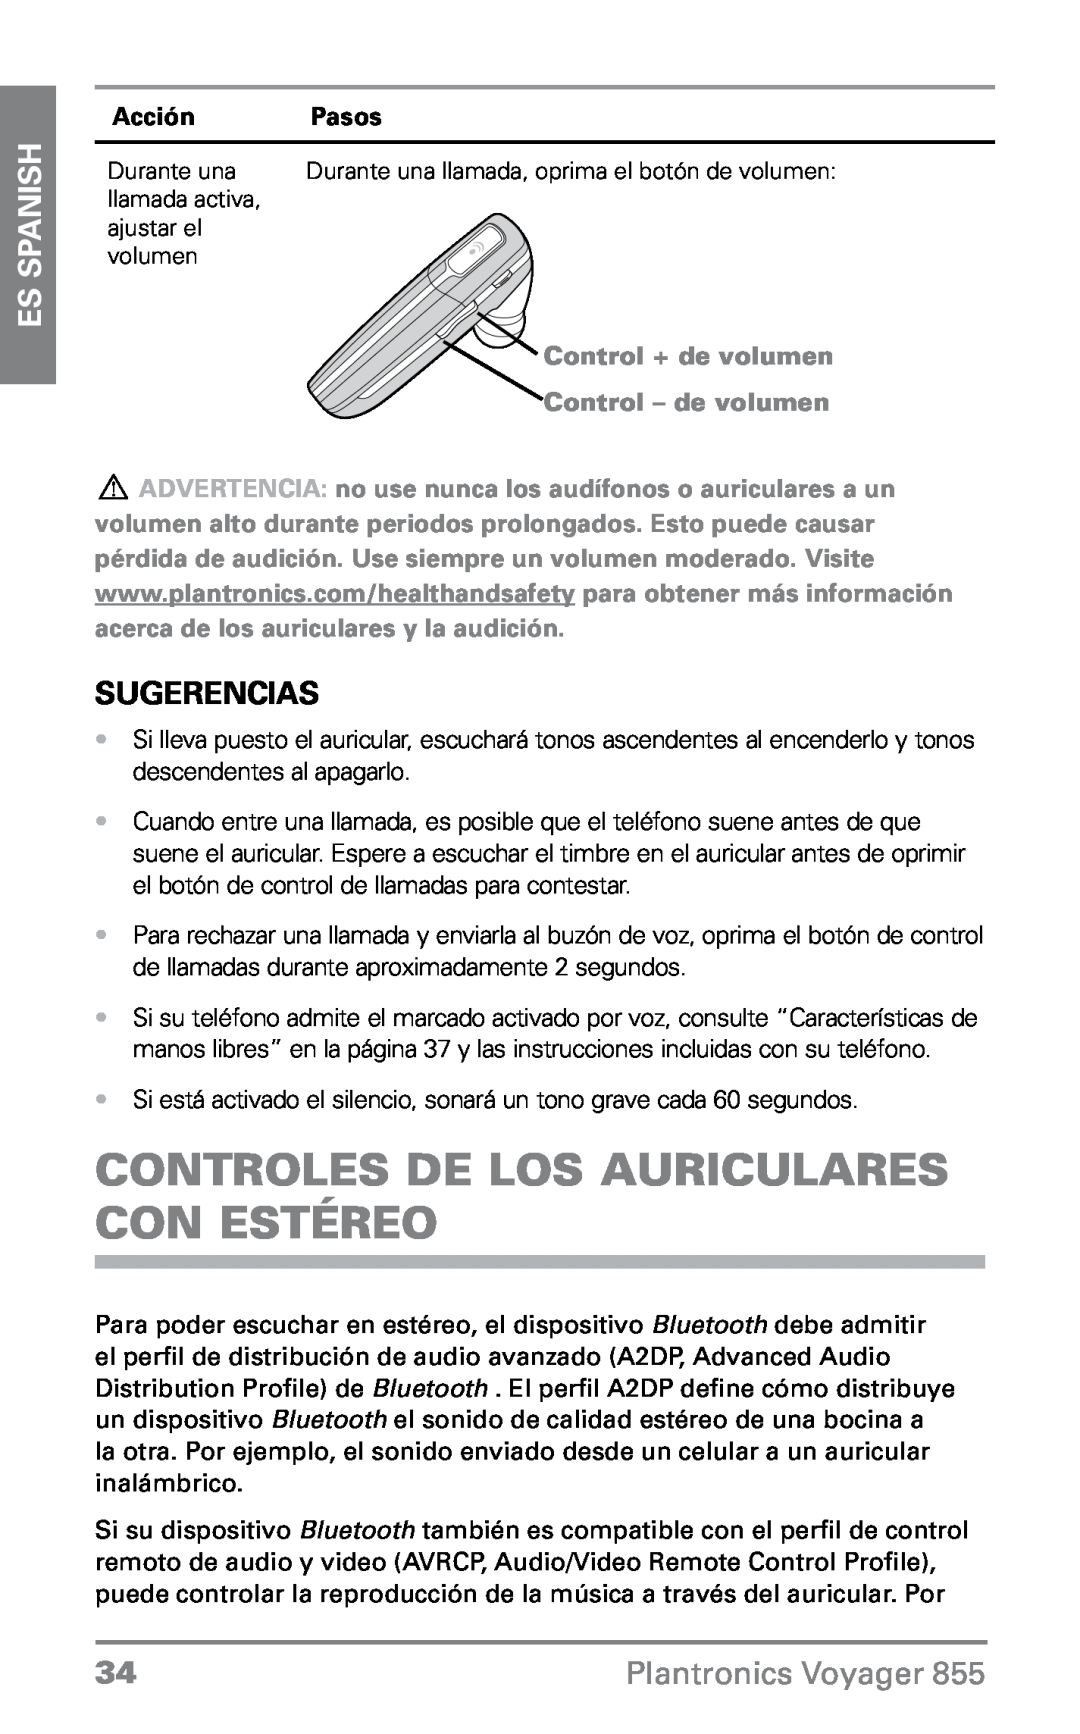 Plantronics VOYAGER855 Controles de lOS auricularES con estéreo, Sugerencias, ES Spanish, Plantronics Voyager, Acción 